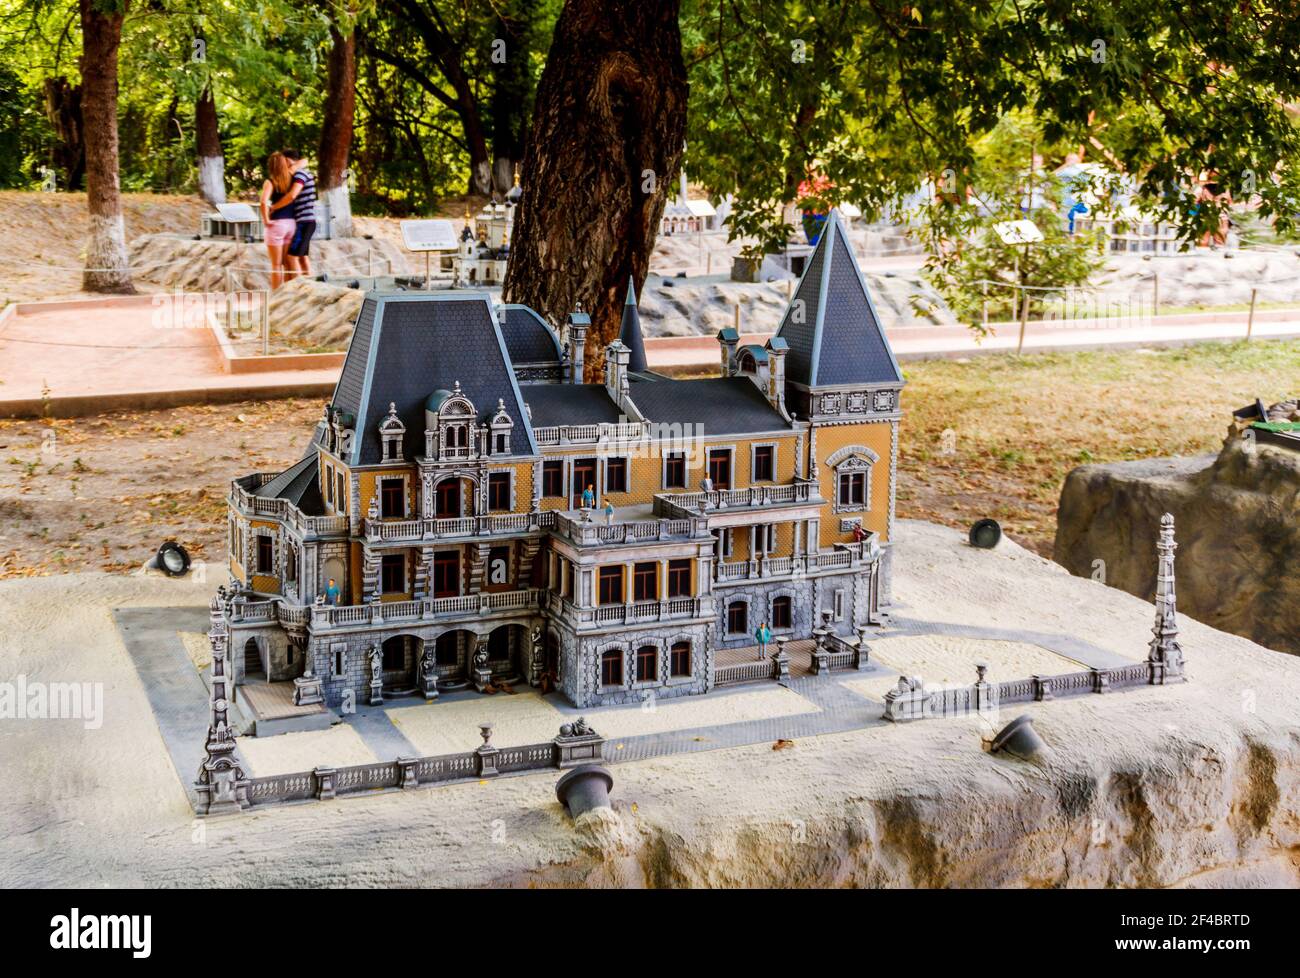 Disposition du Palais Massandra dans le parc 'Crimée en miniature sur la paume' - Bakhchisaray, Crimée, Russie. Banque D'Images